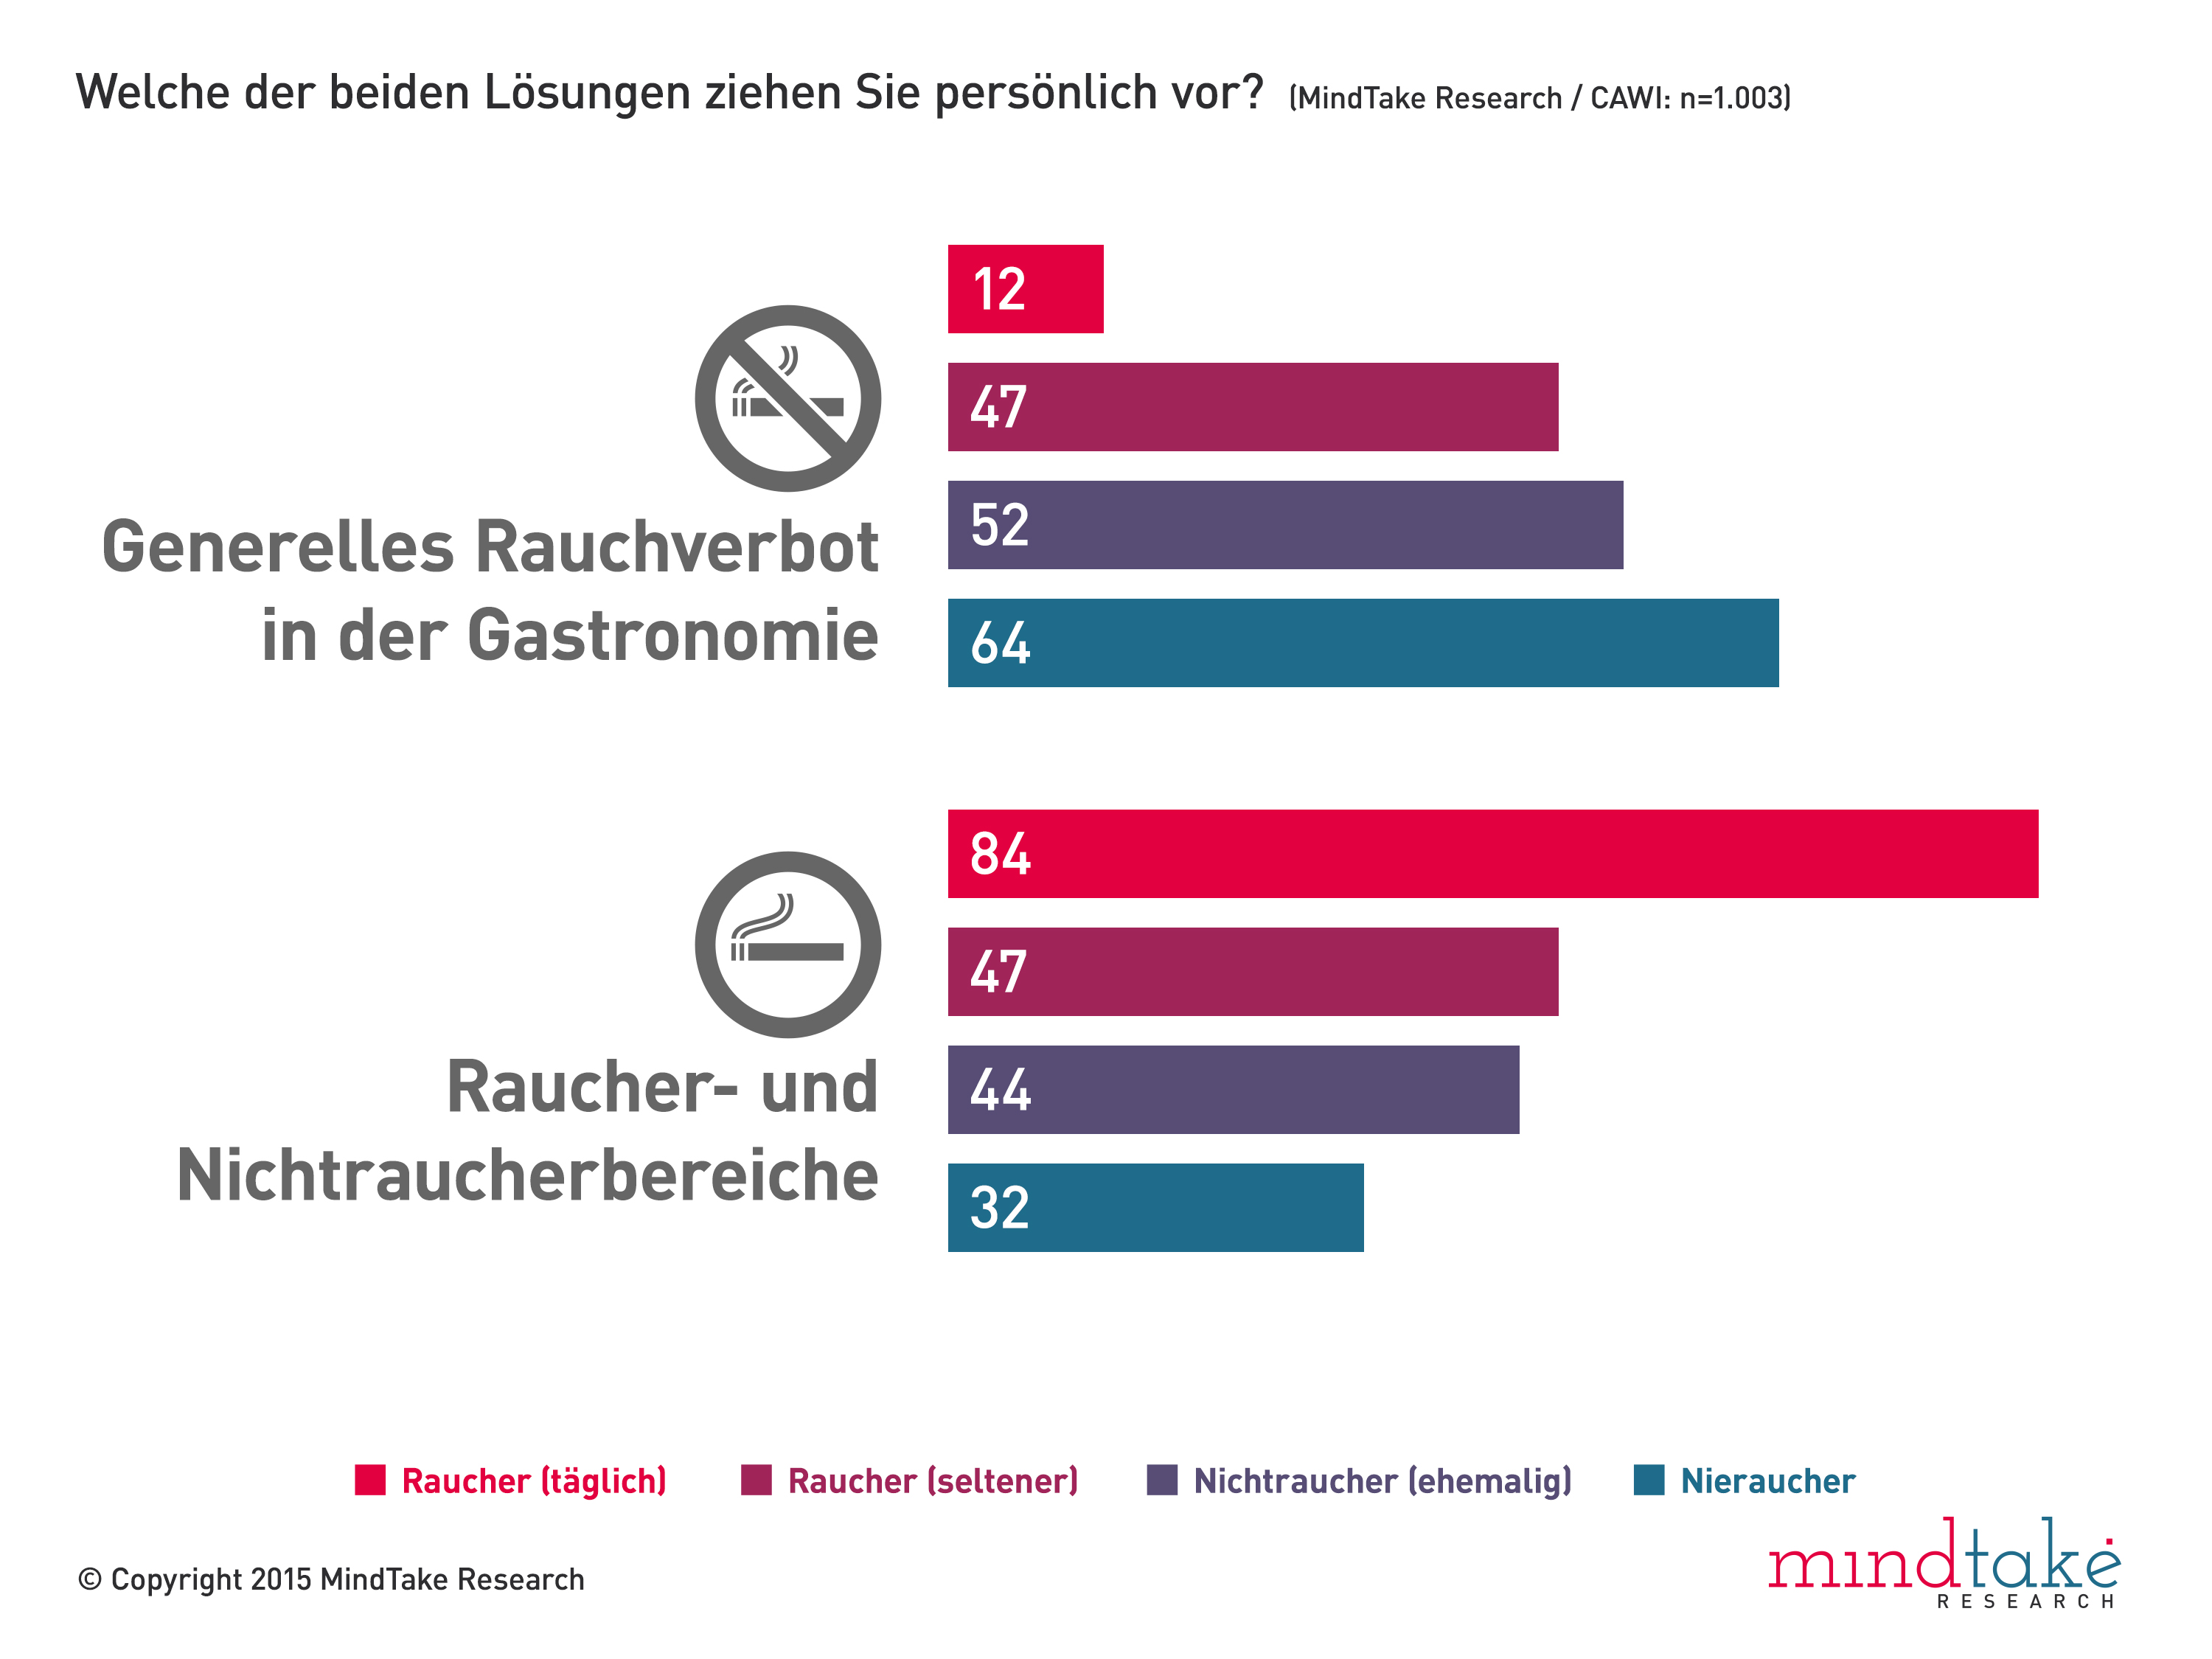 Für viele ÖsterreicherInnen funktioniert die jetzige Lösung – Trennung von Raucher- und Nichtraucherbereich – nicht und bei der Frage, ob generelles Rauchverbot oder aktuelle Lösung, scheiden sich die Geister: Erwartungsgemäß sprechen sich die Nichtraucher (58%) eher für das Rauchverbot und die meisten Raucher (73%) für die derzeitige Lösung aus.Interessant wird es, wenn man noch etwas genauer hinsieht: So finden 84% der Befragten, die täglich rauchen, die jetzige Lösung besser. Bei den Gelegenheitsrauchern (Raucher, die nicht jeden Tag rauchen) ist aber bereits fast die Hälfte (47%) für das Rauchverbot. Hier zeigt sich demnach: Je intensiver der Zigarettenkonsum, desto mehr sind Befragte gegen das generelle Rauchverbot.Bei den Nichtrauchern sind jene toleranter, die früher selbst einmal geraucht haben. So ist etwas mehr als die Hälfte der ehemaligen Raucher (52%) für das Rauchverbot. Bei denen, die noch nie geraucht haben sind es 64%.